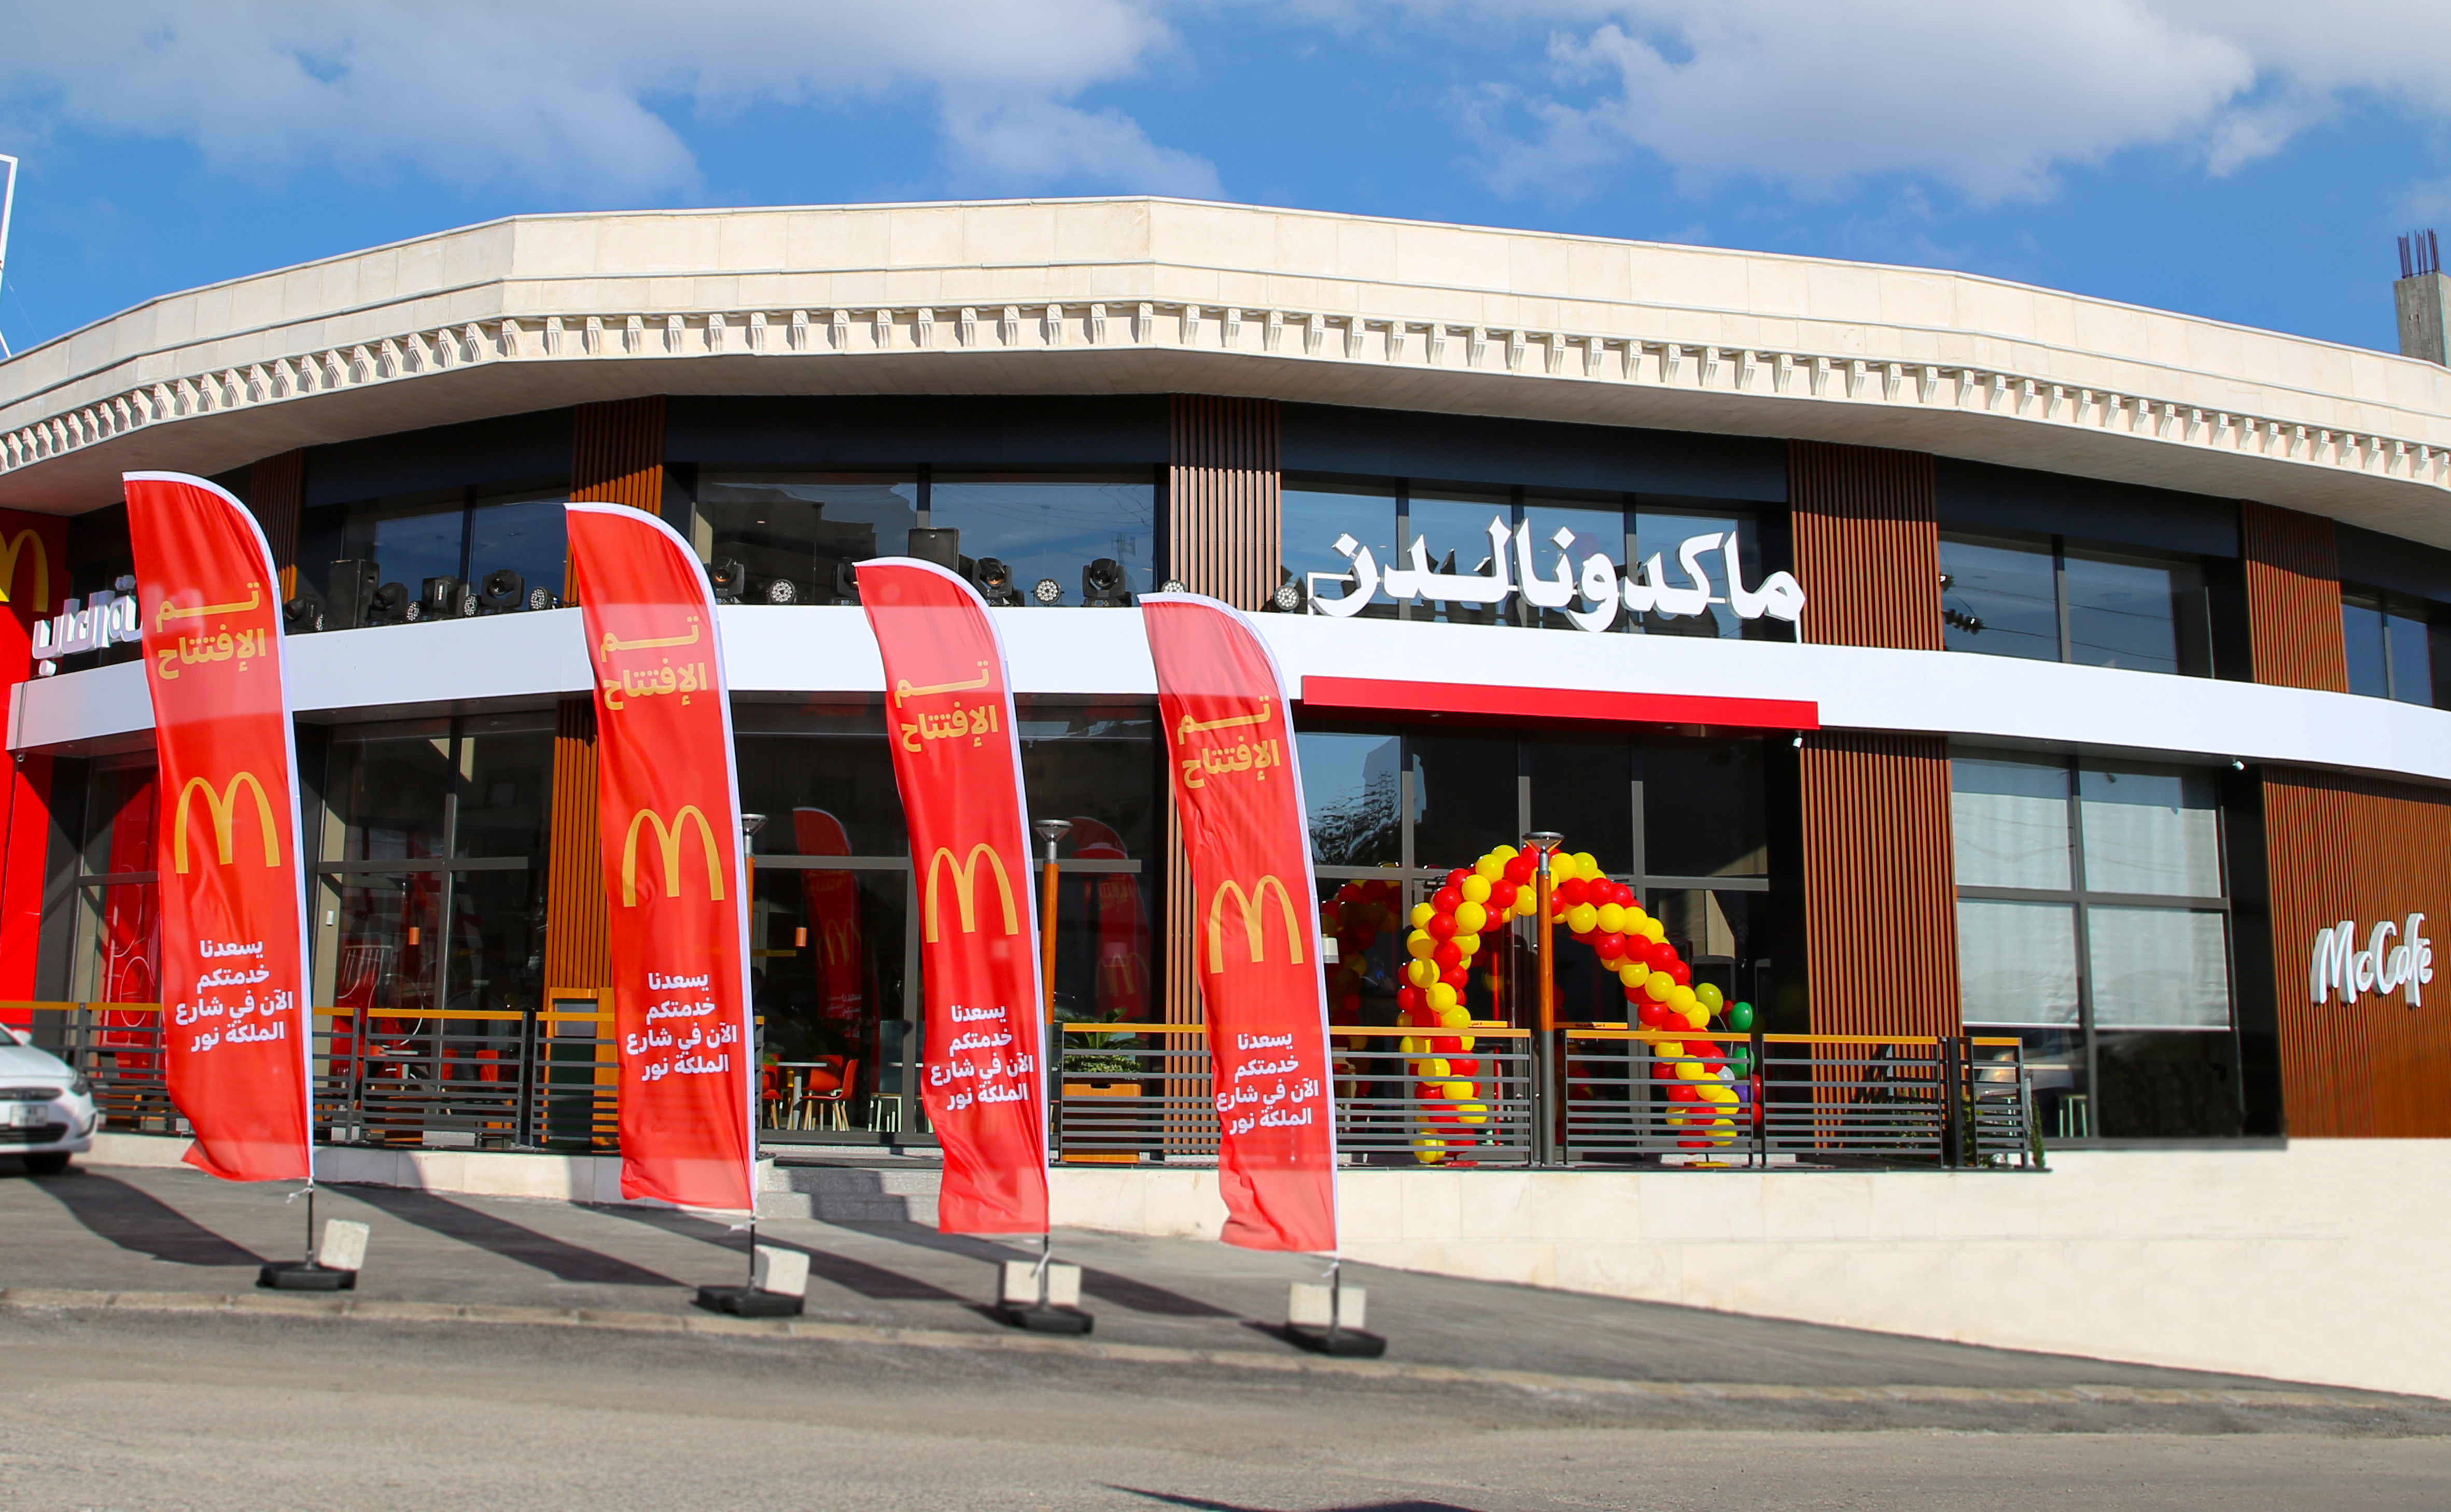 ماكدونالدز الأردن تفتتح أول فروعها لعام 2022في مدينة الرمثا 